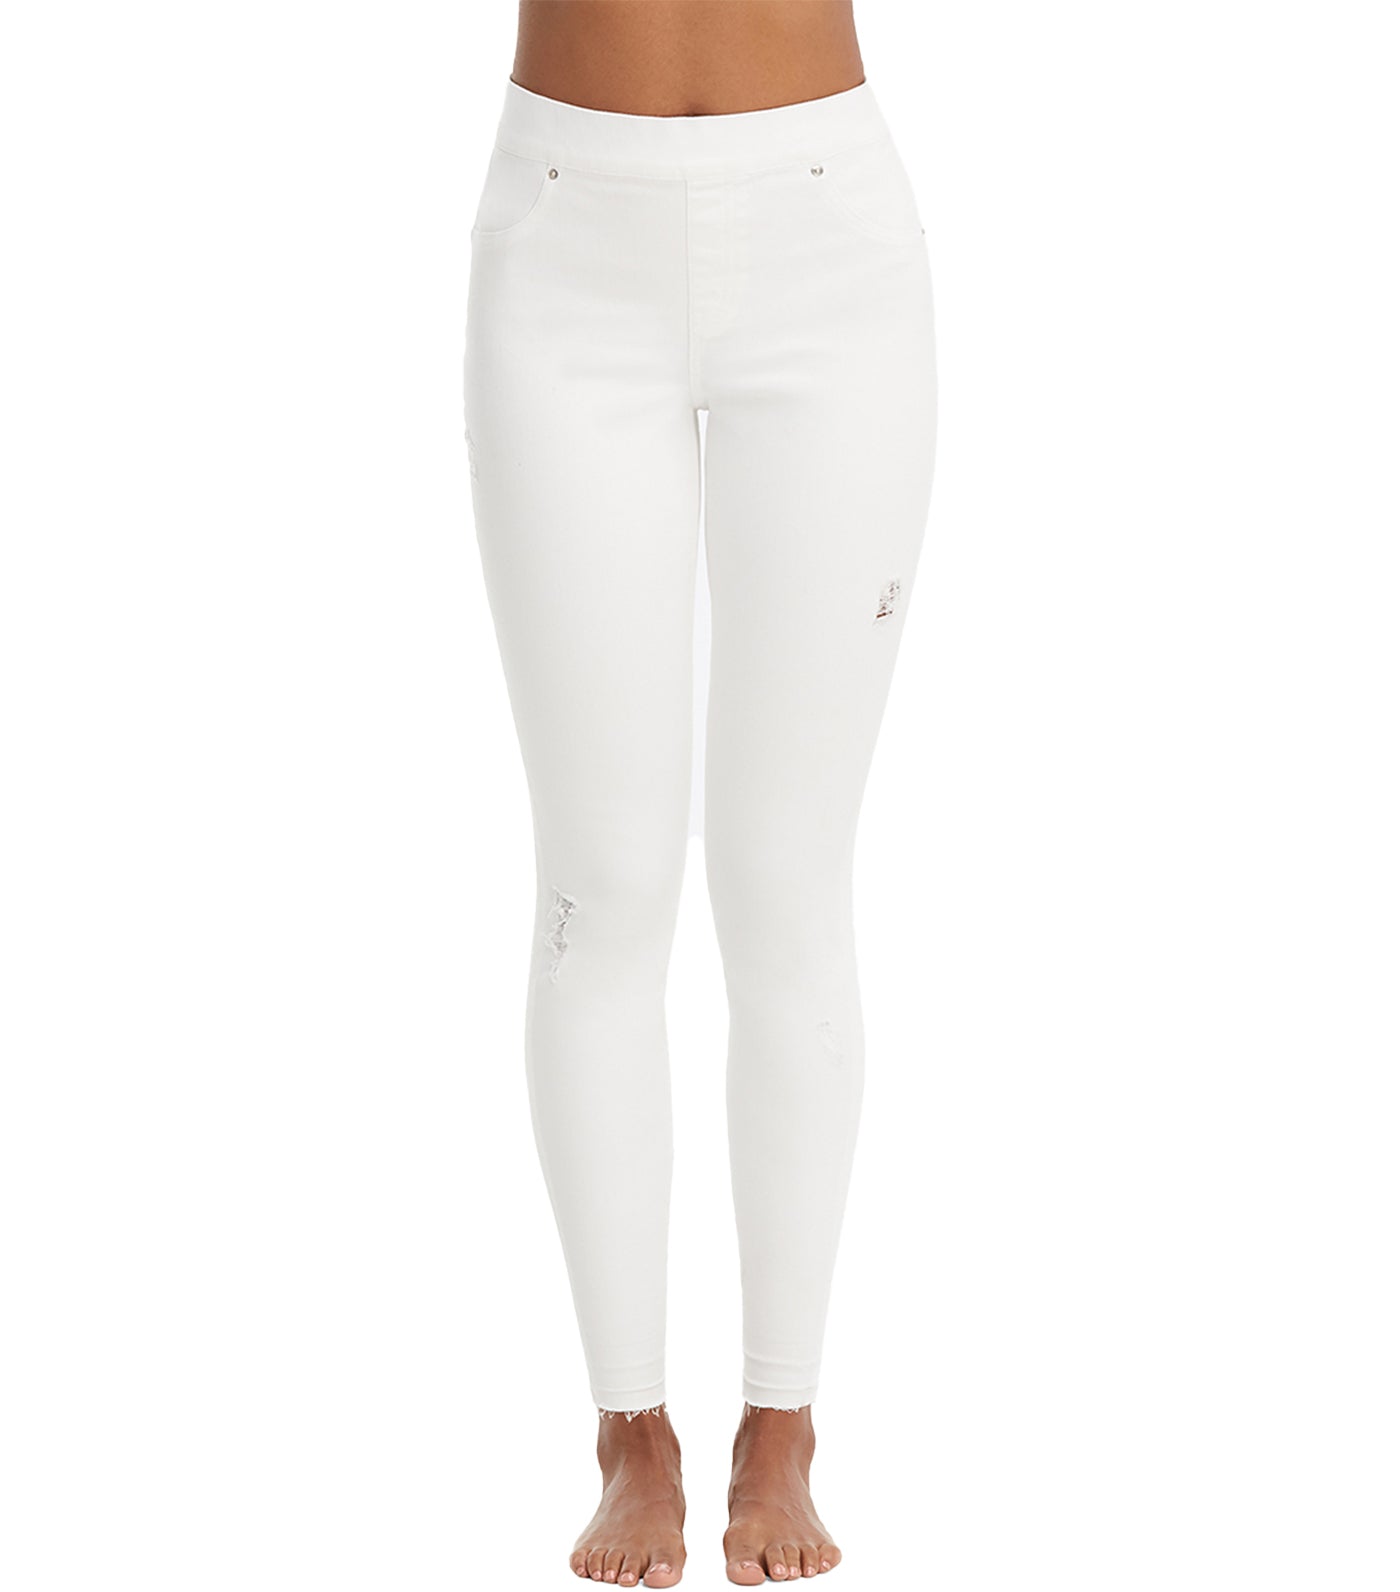 NEW Spanx Jean-ish Leggings in White - Size S #1267